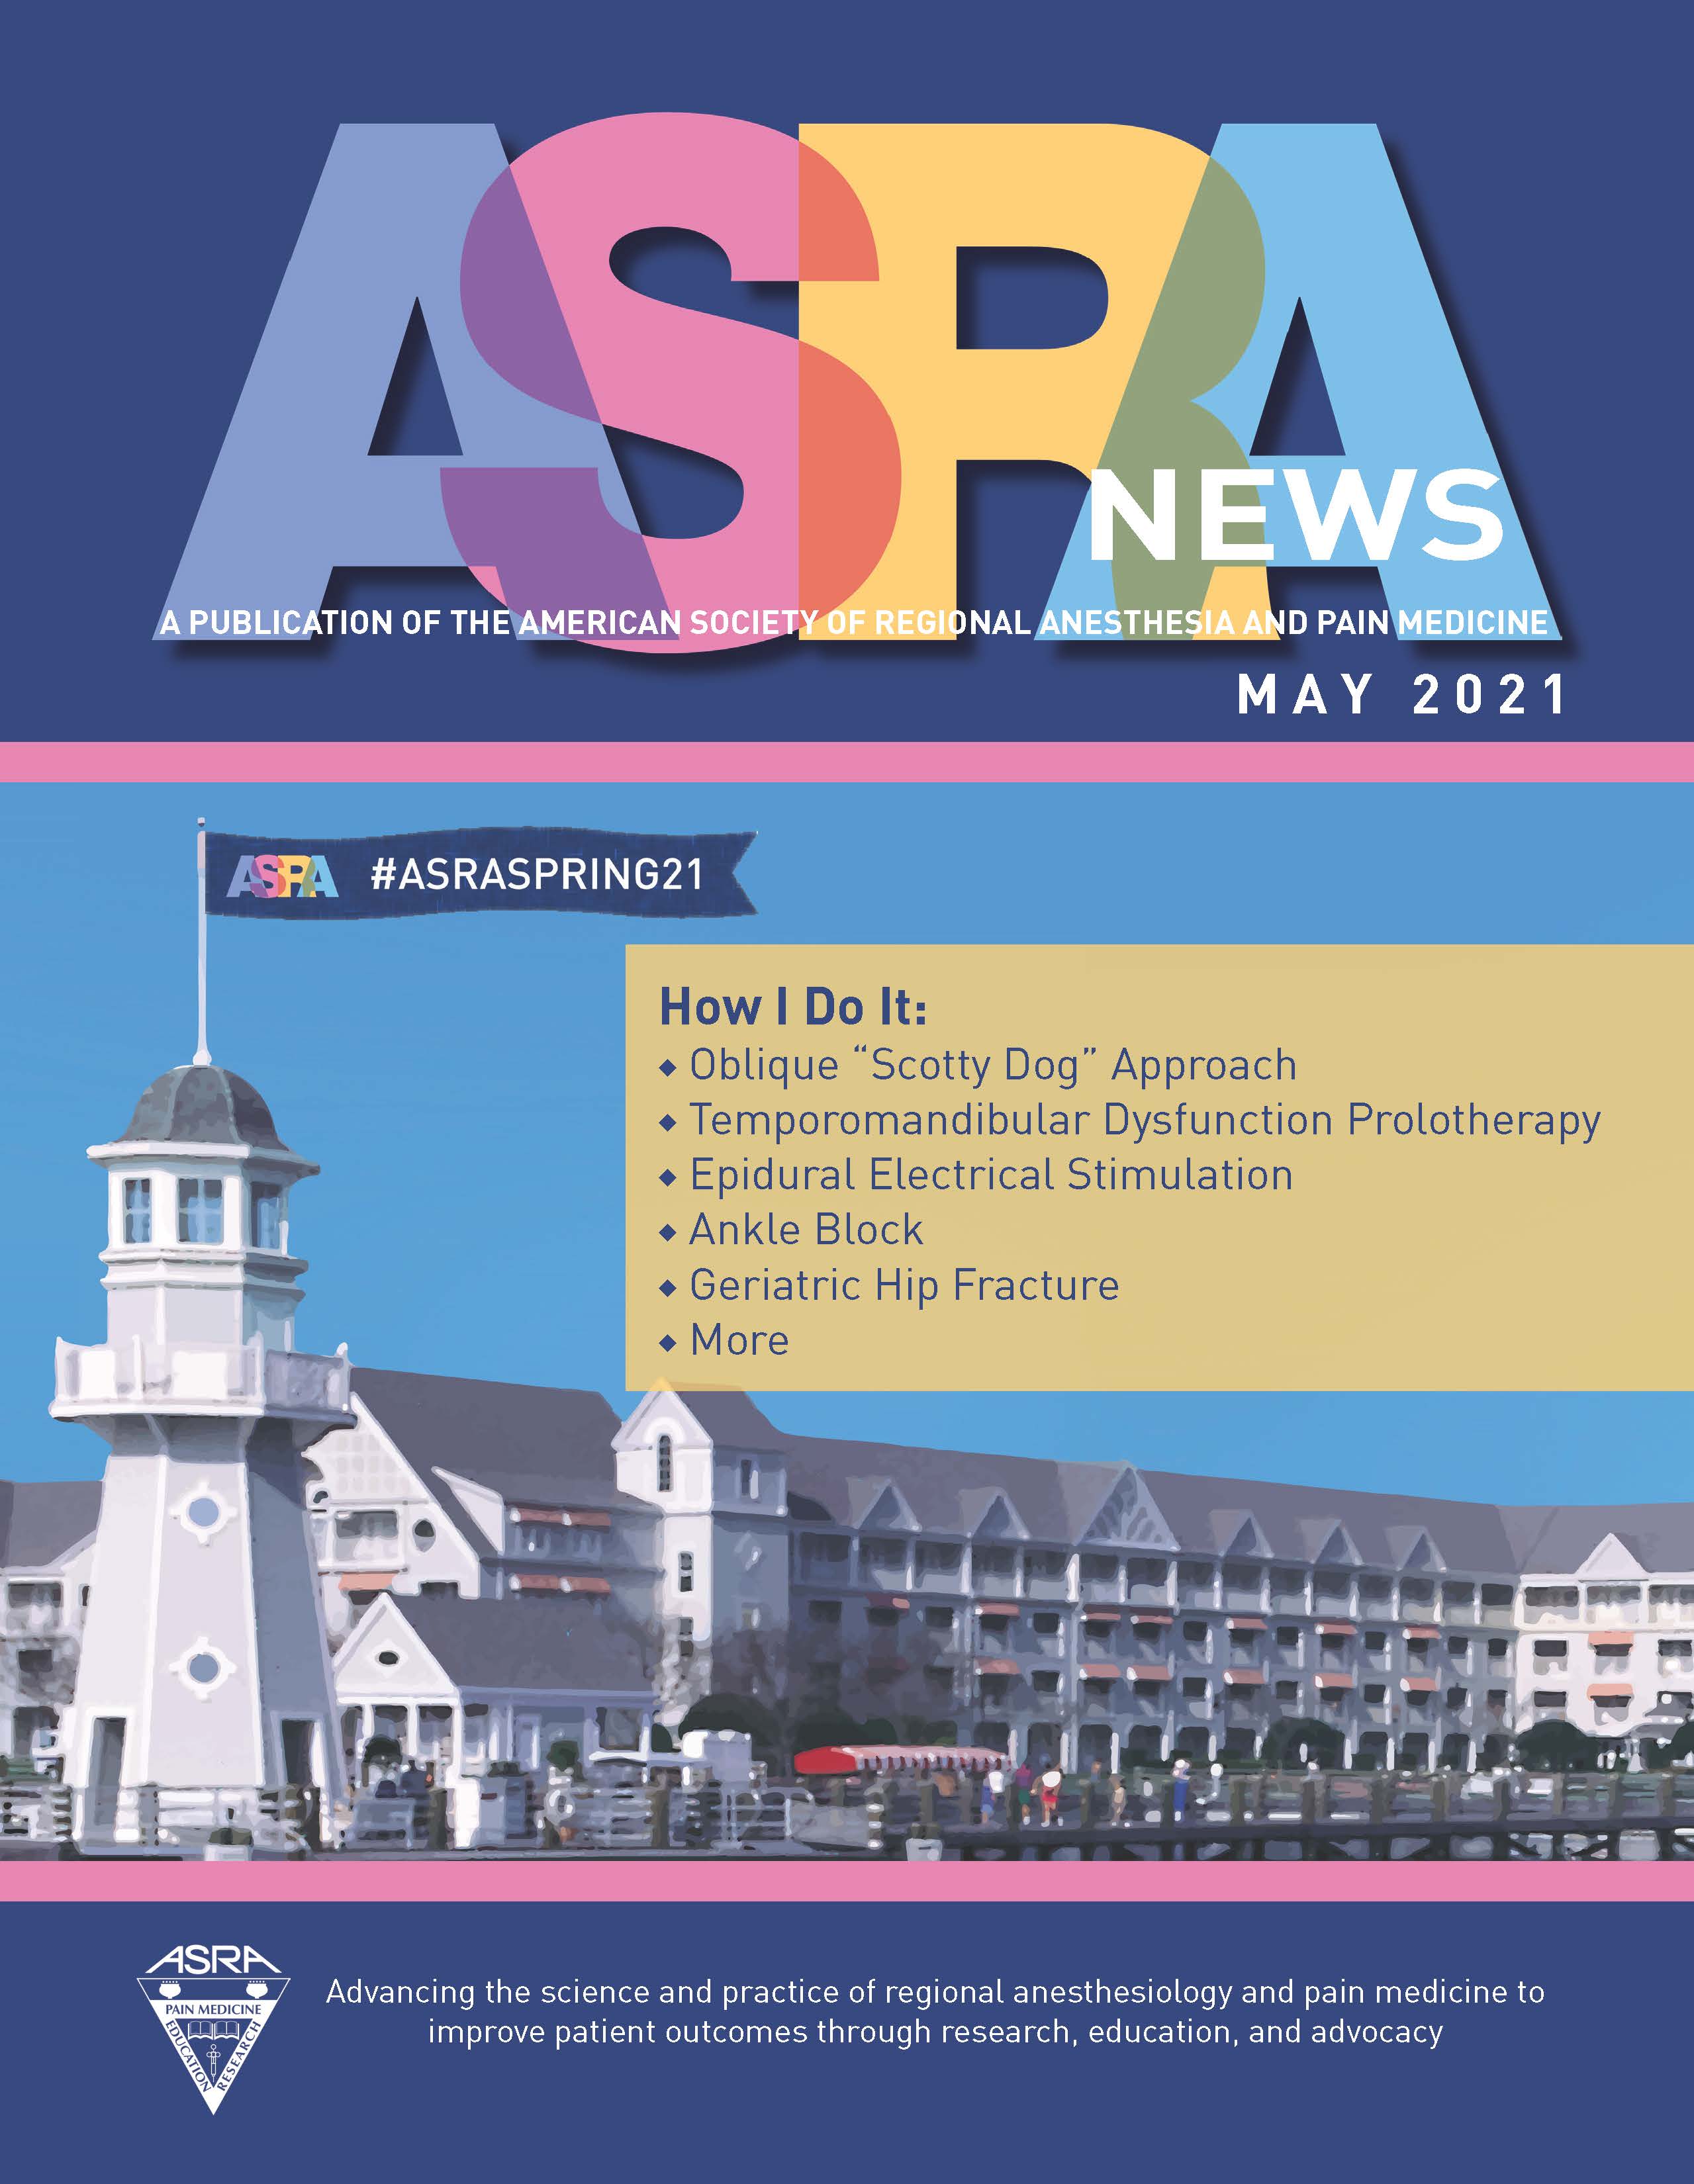 ASRA News May 2021